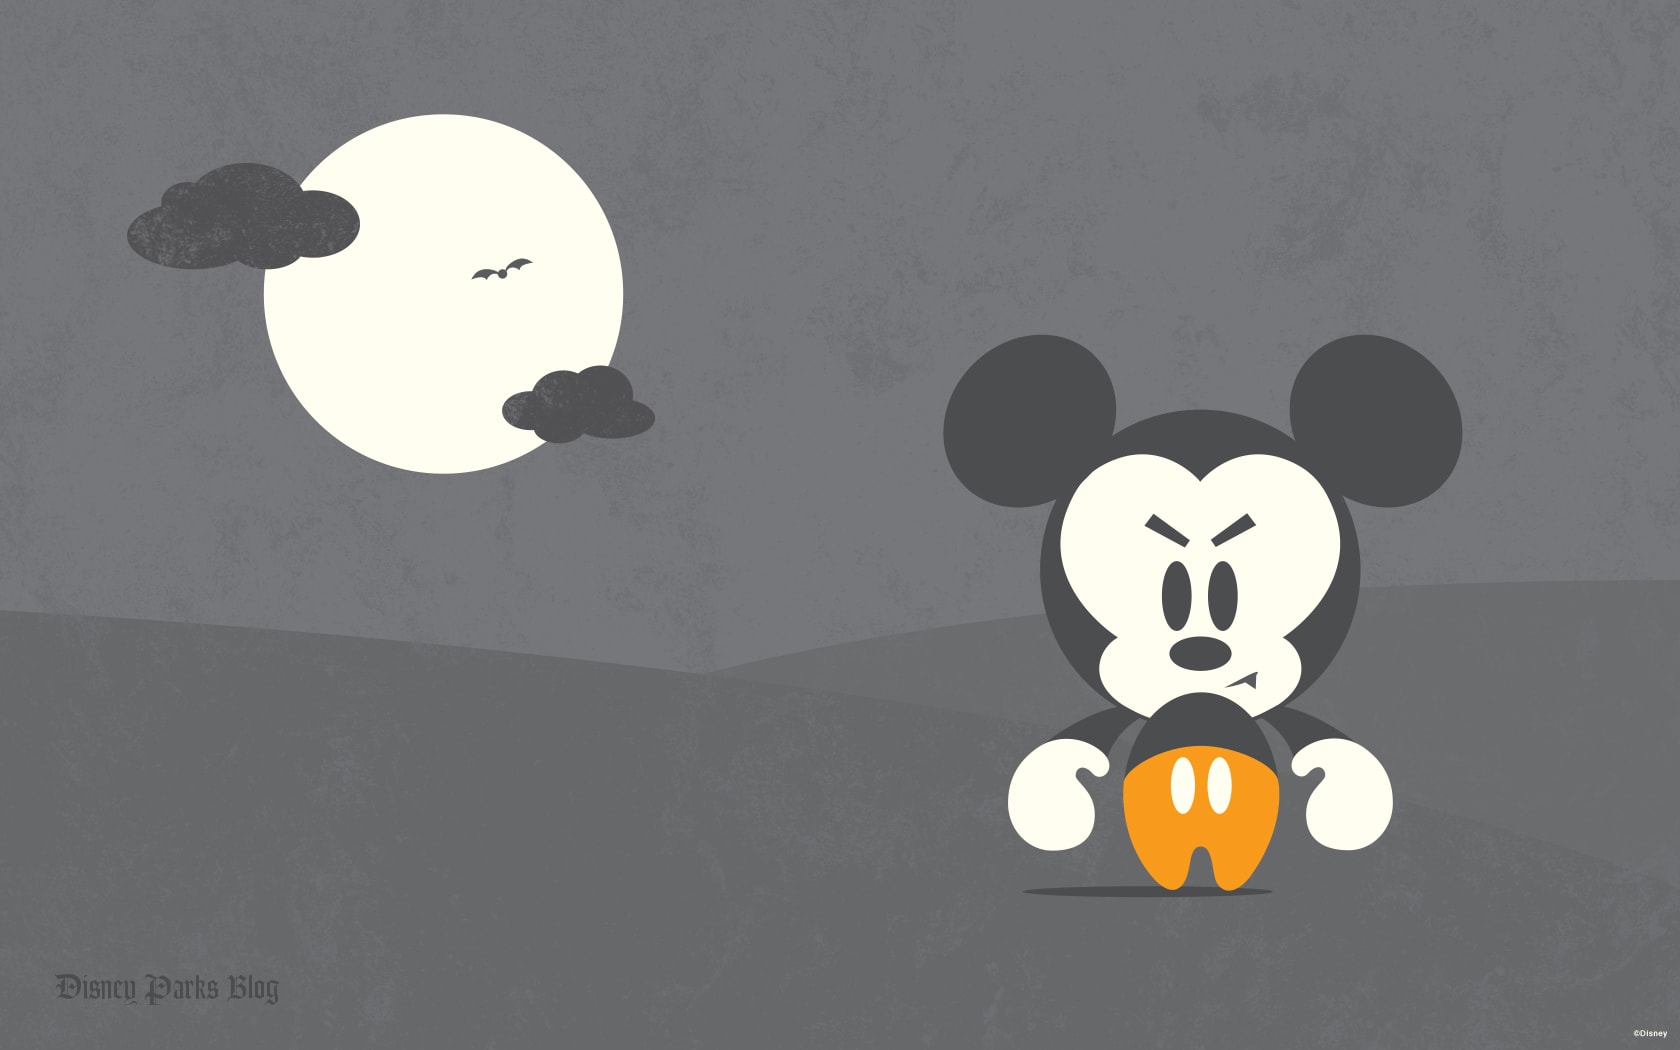 Halloween Desktop Wallpapers | Disney Parks Blog